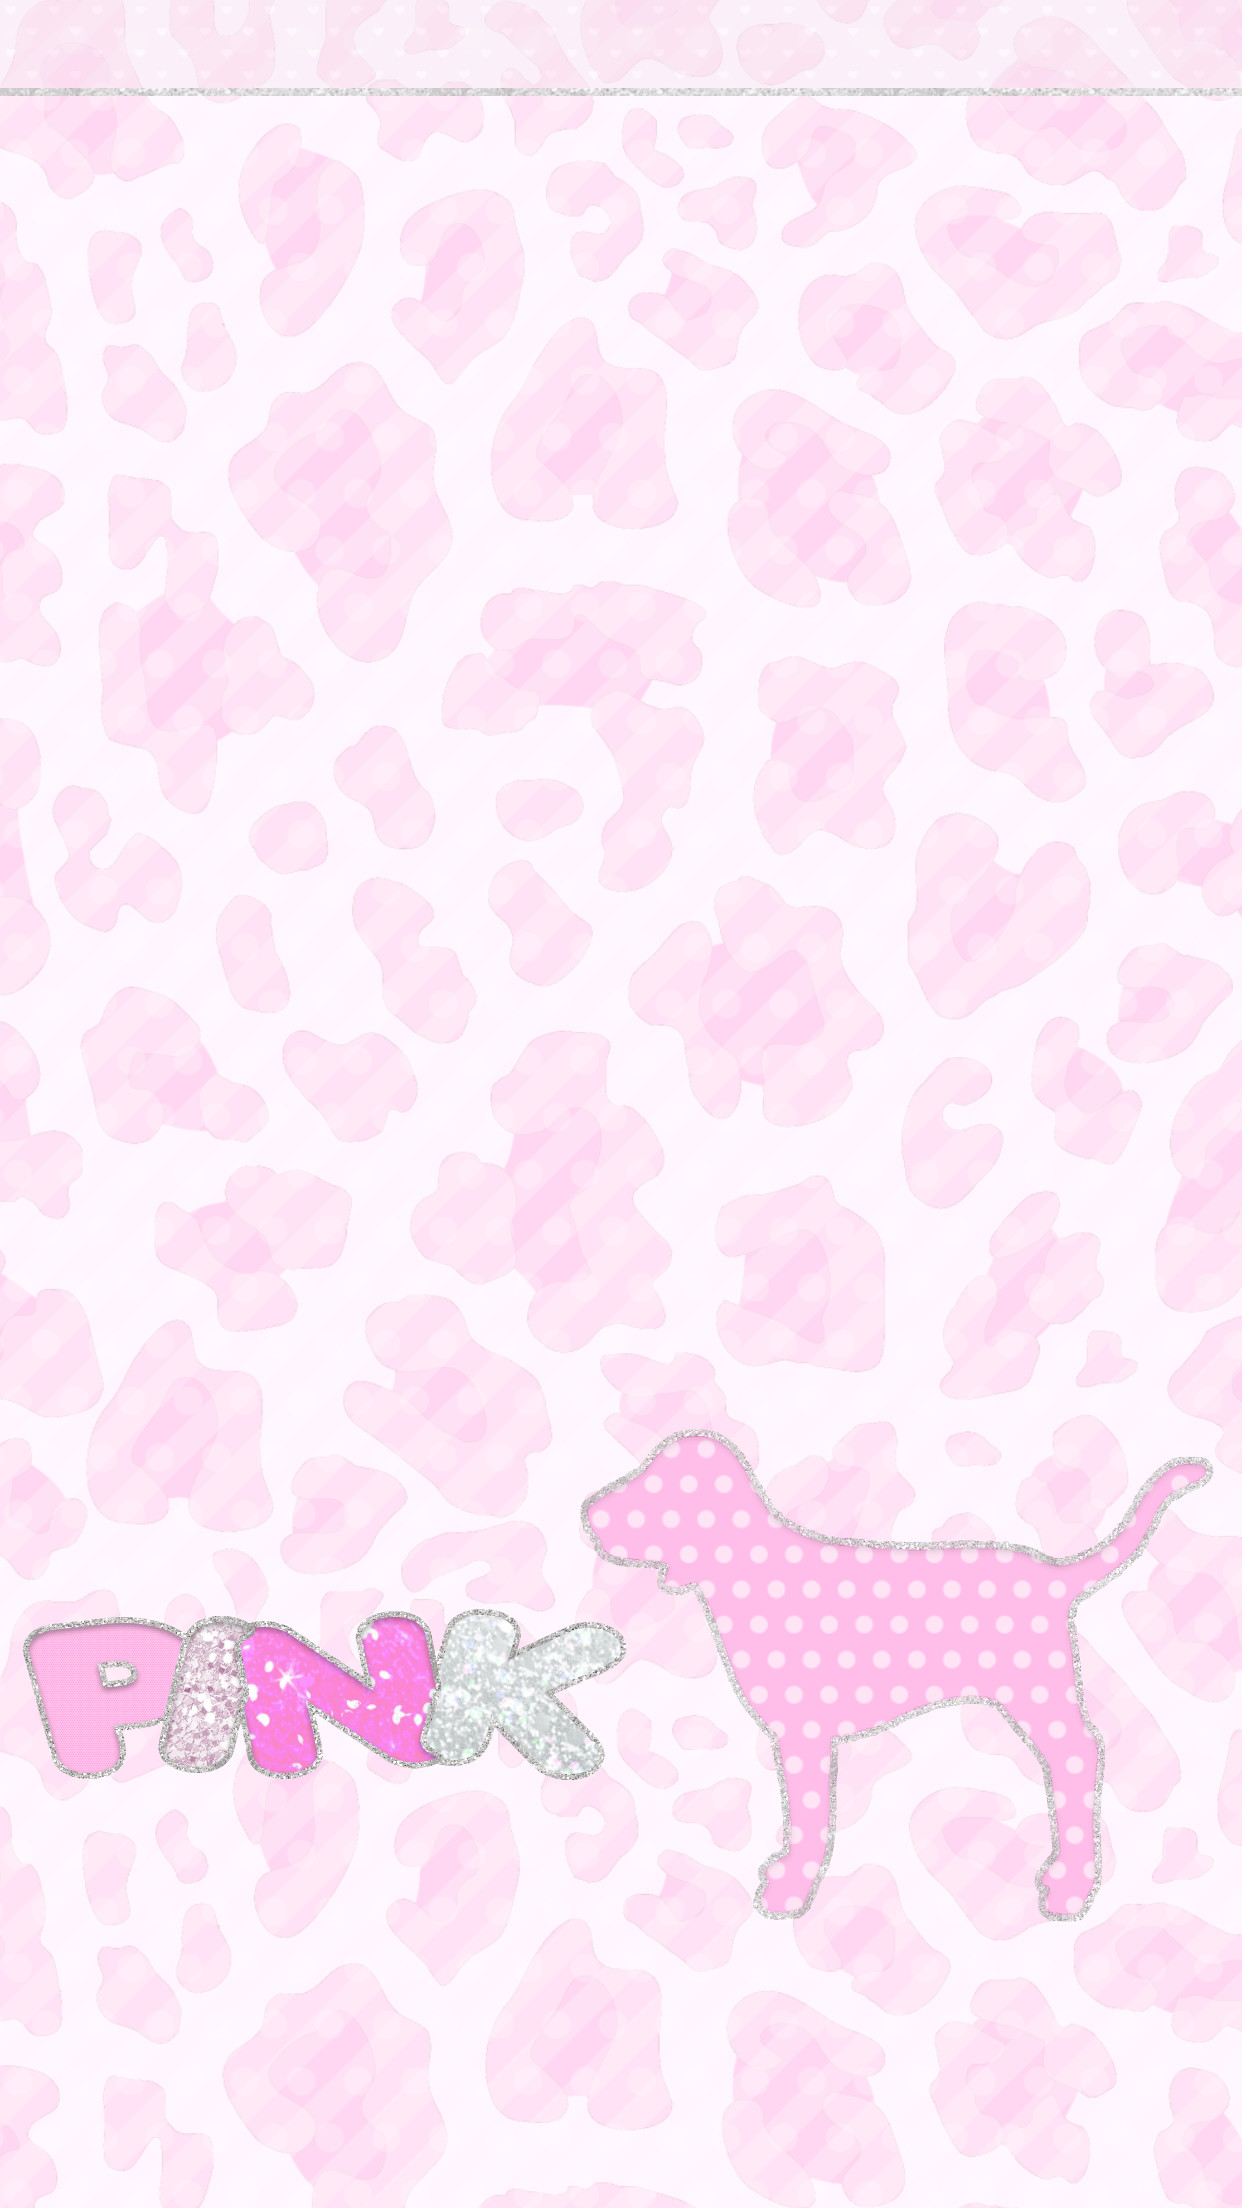 1242x2208 Pink Wallpaper, Hello Kitty Wallpaper, Computer Wallpaper, Wallpaper  Backgrounds, Iphone 2, Designer Wallpaper, Phone Wallpapers, Fashion  Branding, ...